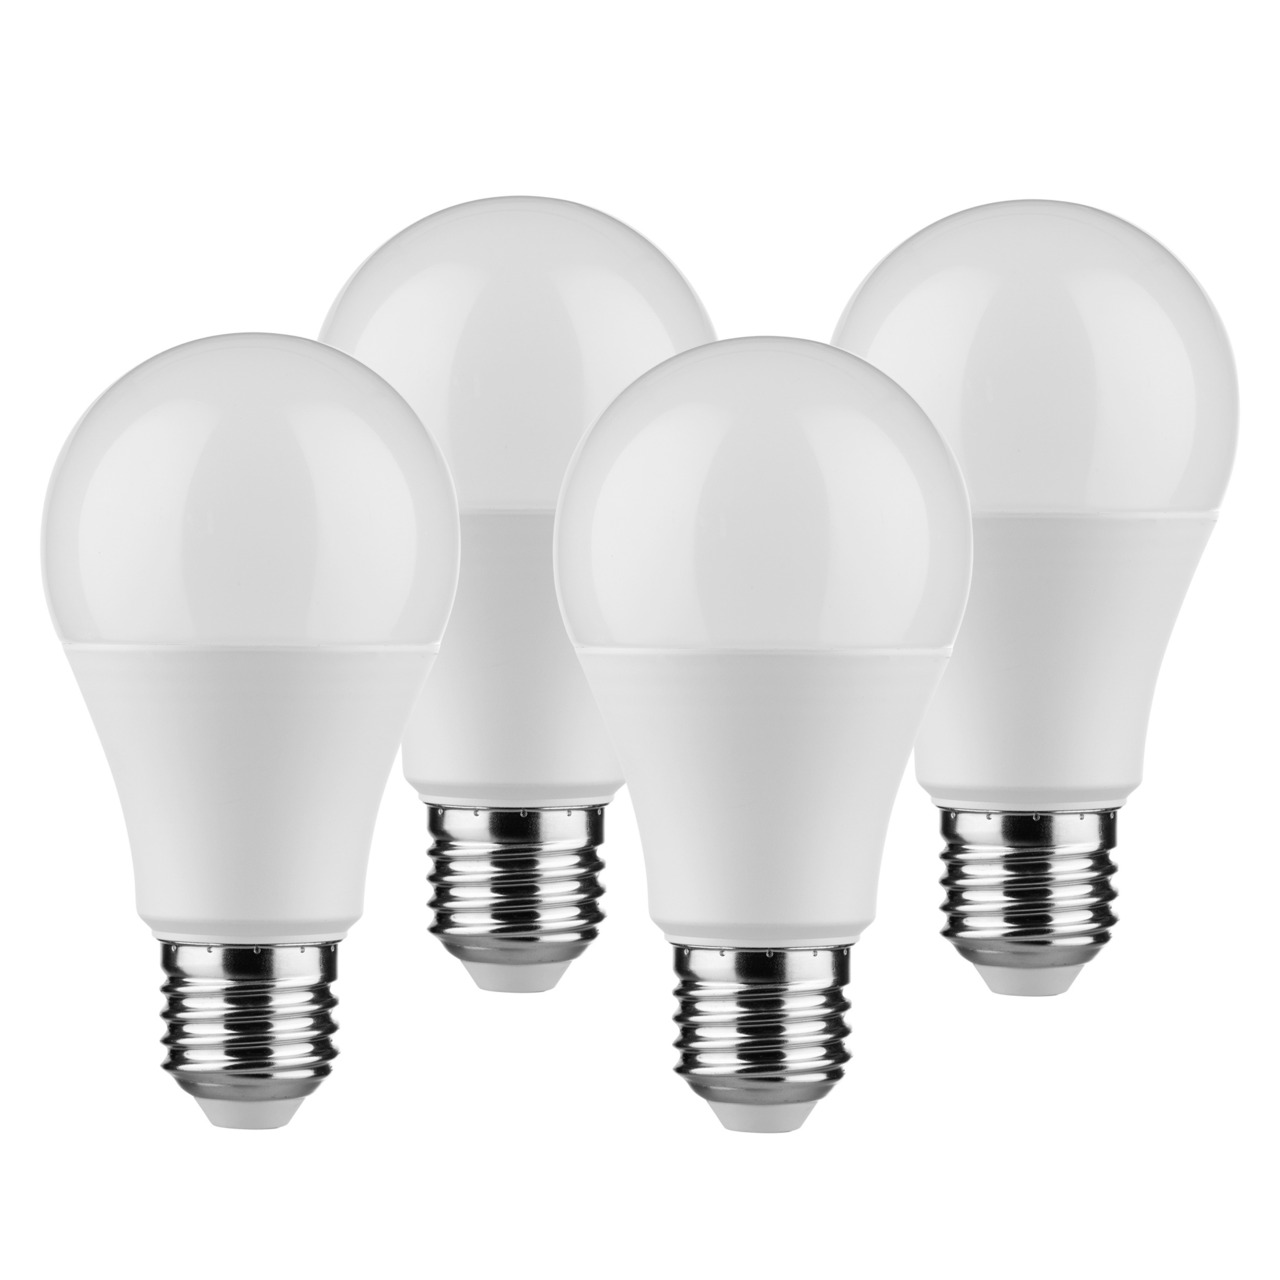 Mller Licht 4er-Pack 9-W-LED-Lampen E27- warmweiss- 806 lm unter Beleuchtung